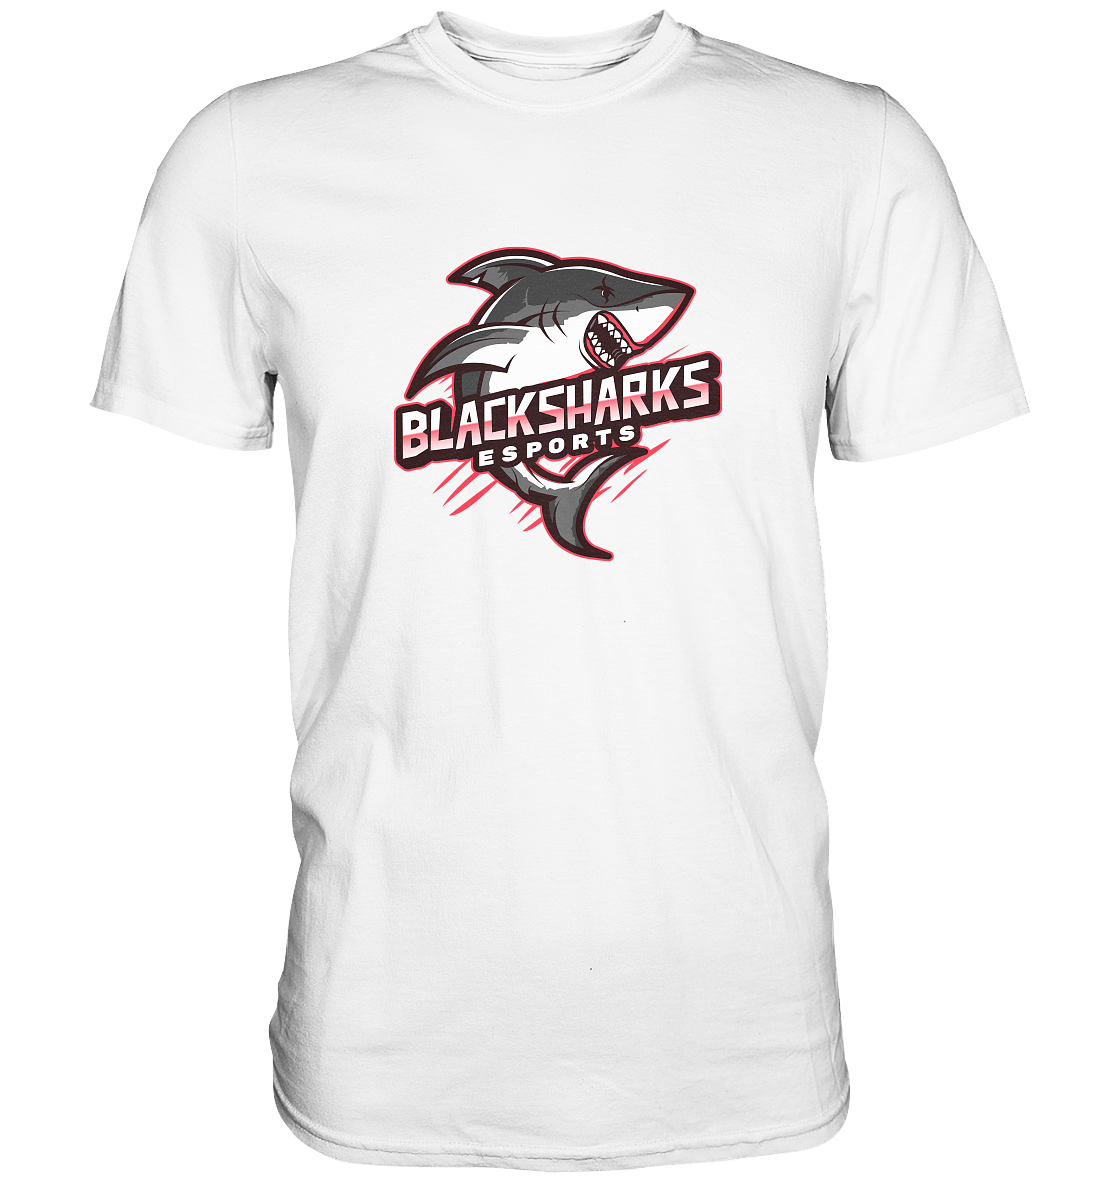 BLACKSHARKS ESPORTS - Basic Shirt